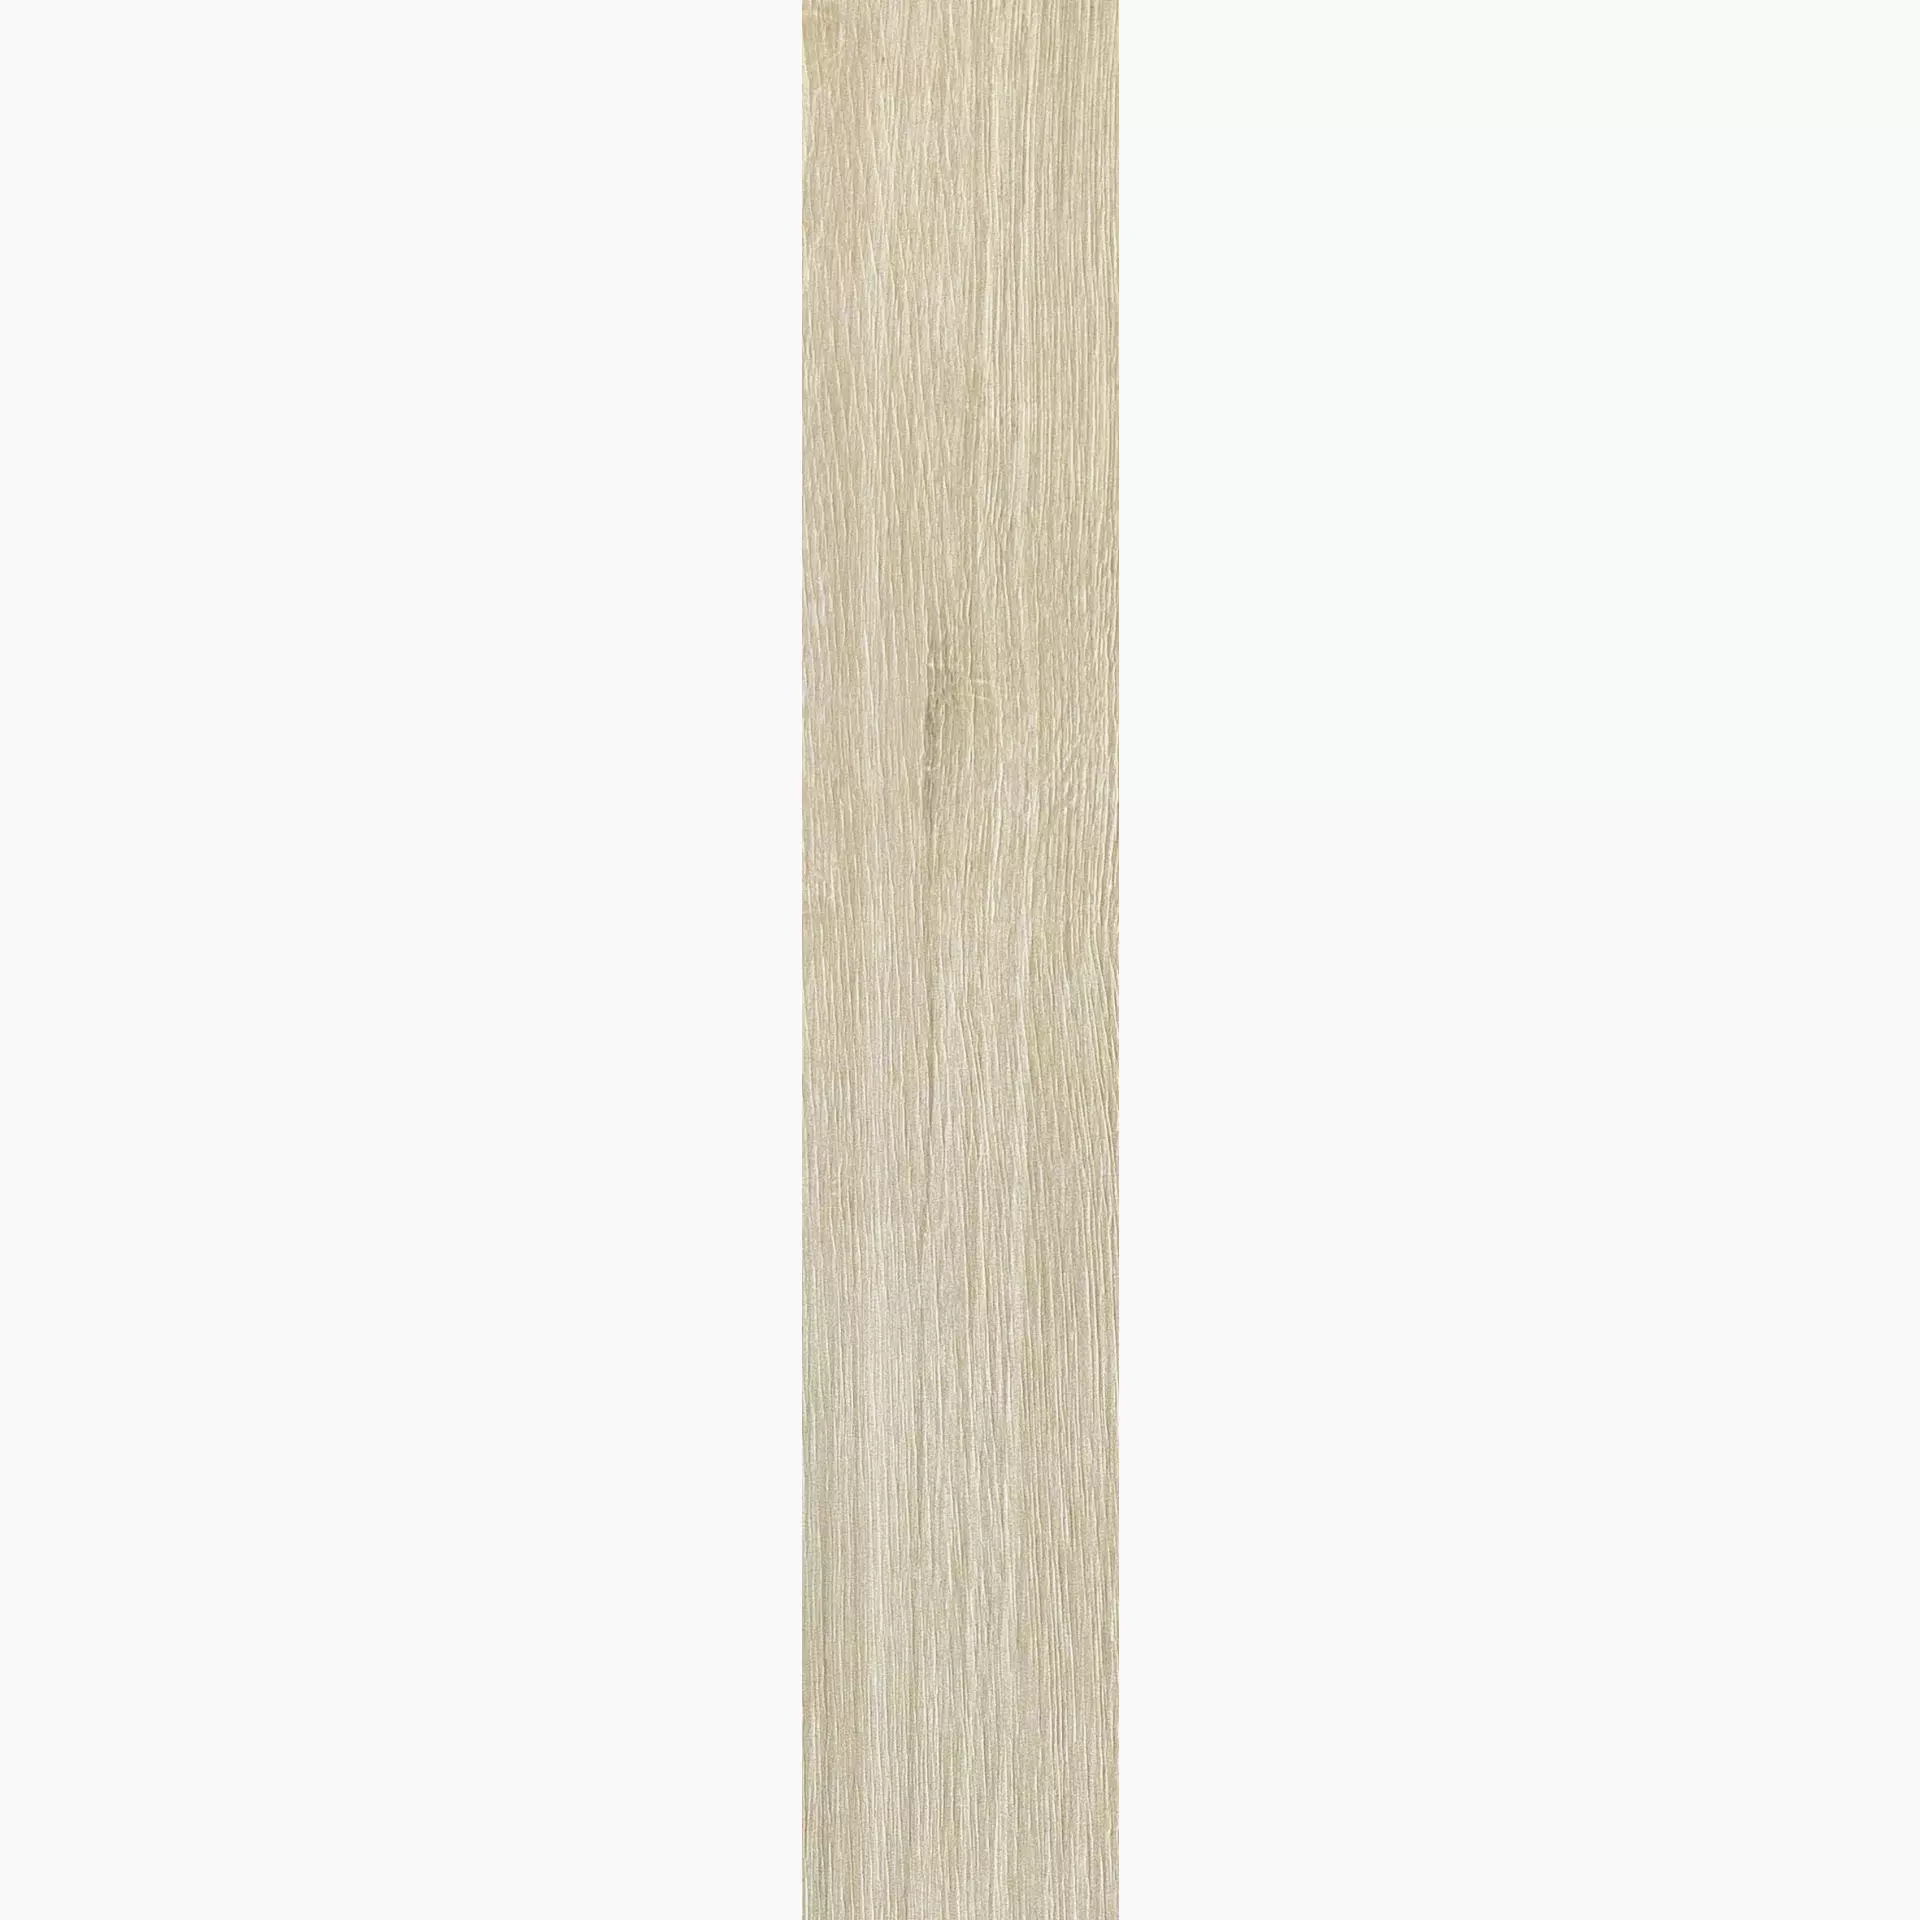 Florim Planches De Rex Amande Naturale – Matt Amande 755608 matt natur 20x120cm rektifiziert 9mm